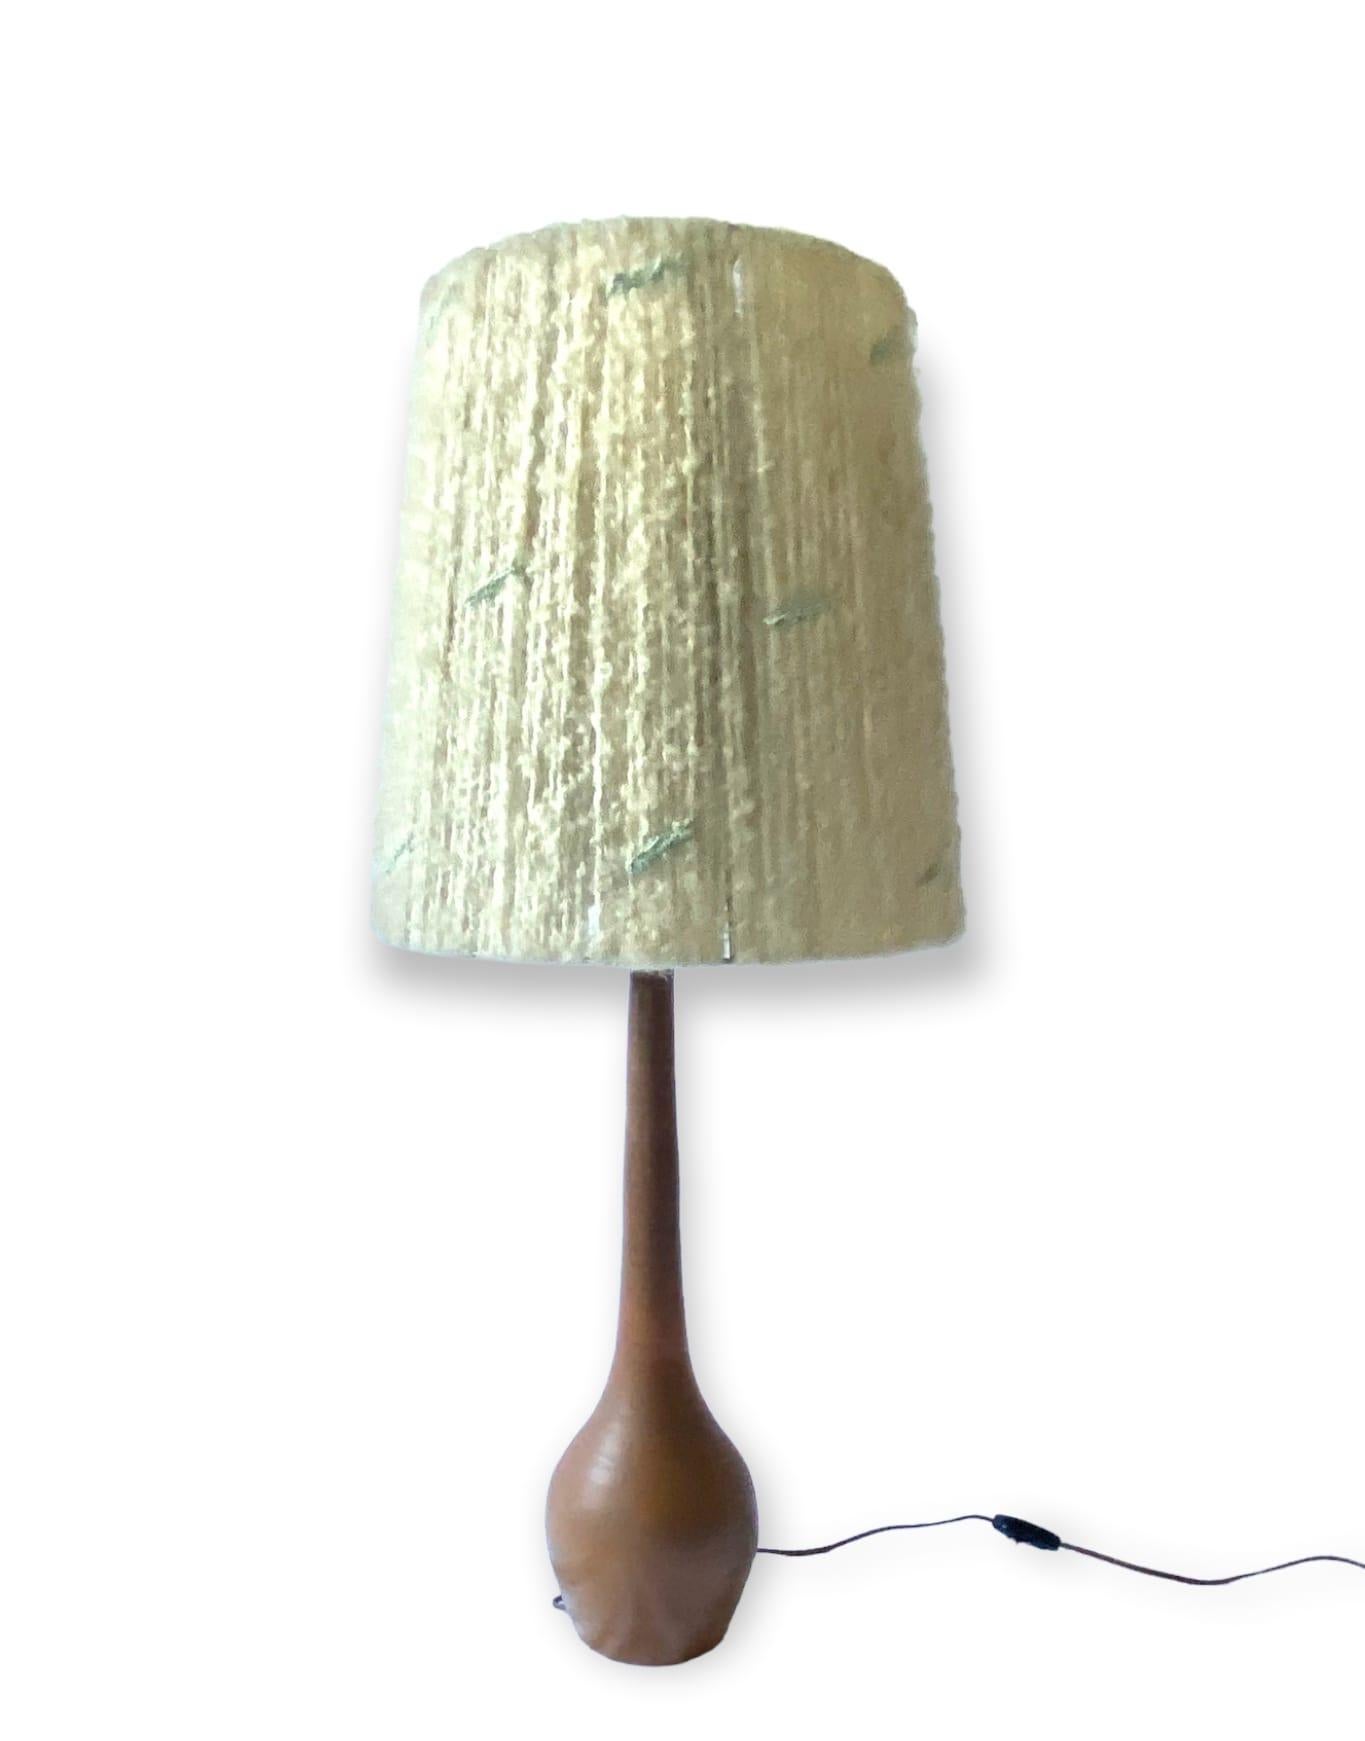 Midcentury Monumental Glazed Terracotta Table Lamp, France, 1950s For Sale 9